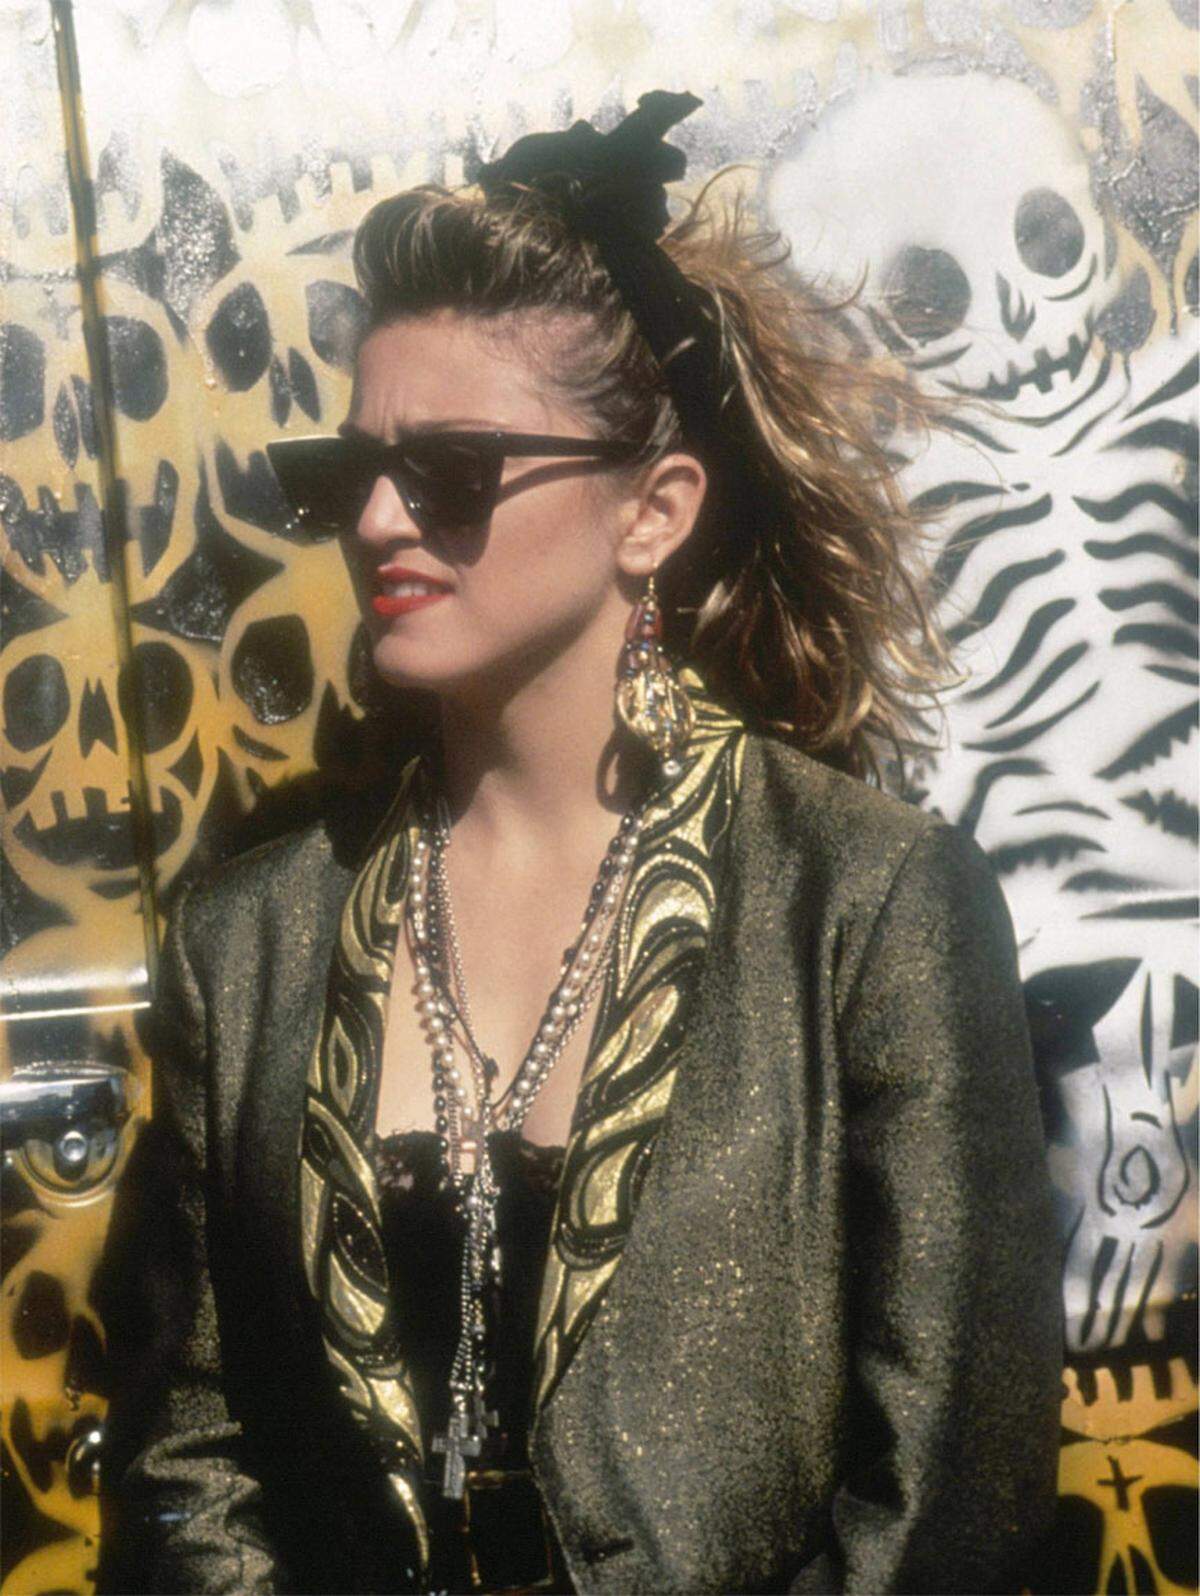 In den 80er-Jahren feierten die Zopfgummis, auch "Scrunchies" genannt, unter anderem durch Madonna  ihre Hochblüte. doch wie vieles aus den 80er-Jahren fiel in den Jahren darauf das Haargummi unter die Kategorie Modesünde.